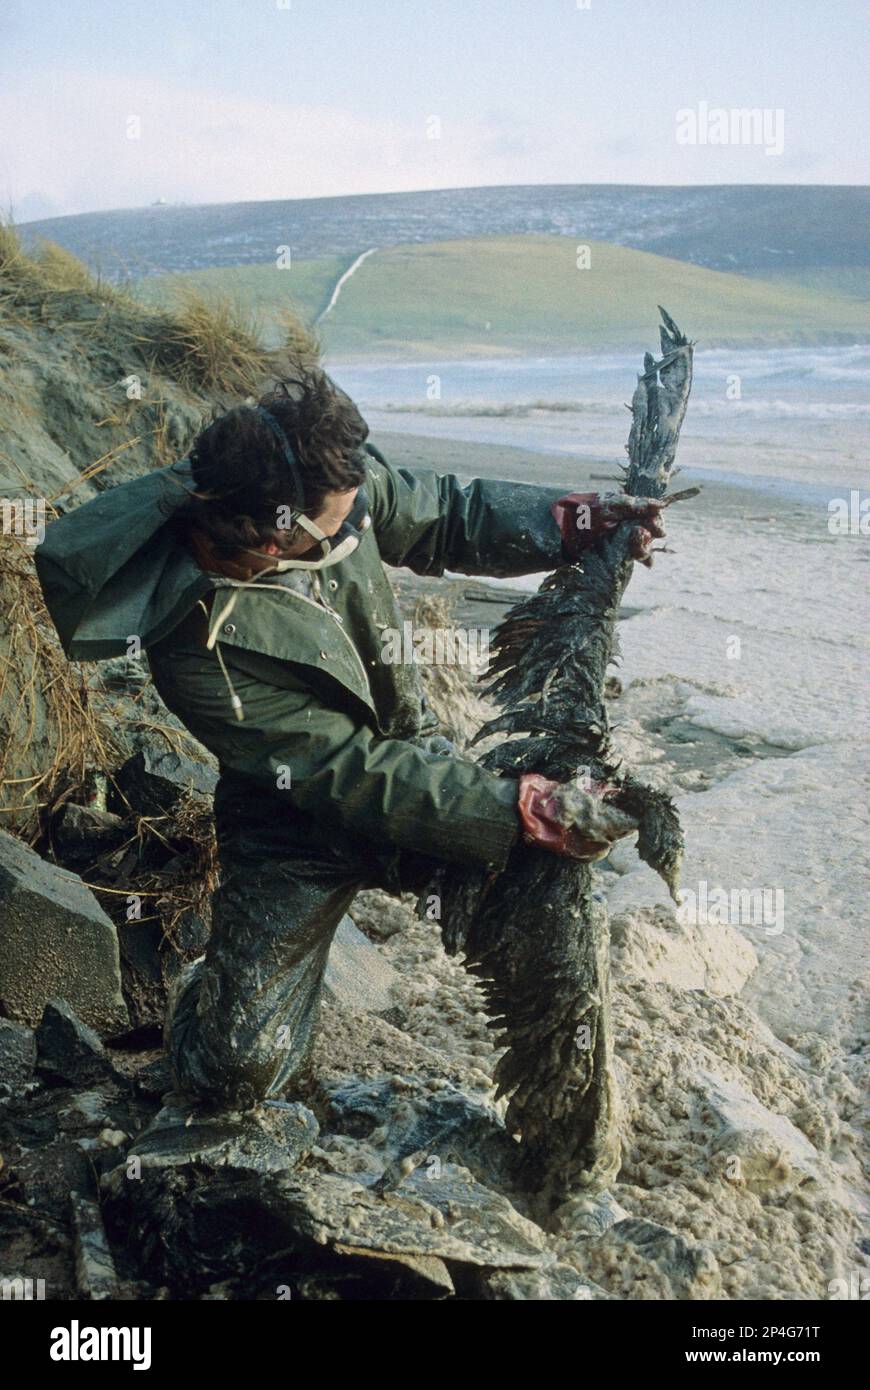 Oiseau mort et huilé détenu par une personne sur la plage après la catastrophe de Braer, Quendale Bay, Shetland Islands, Écosse, Royaume-Uni Banque D'Images